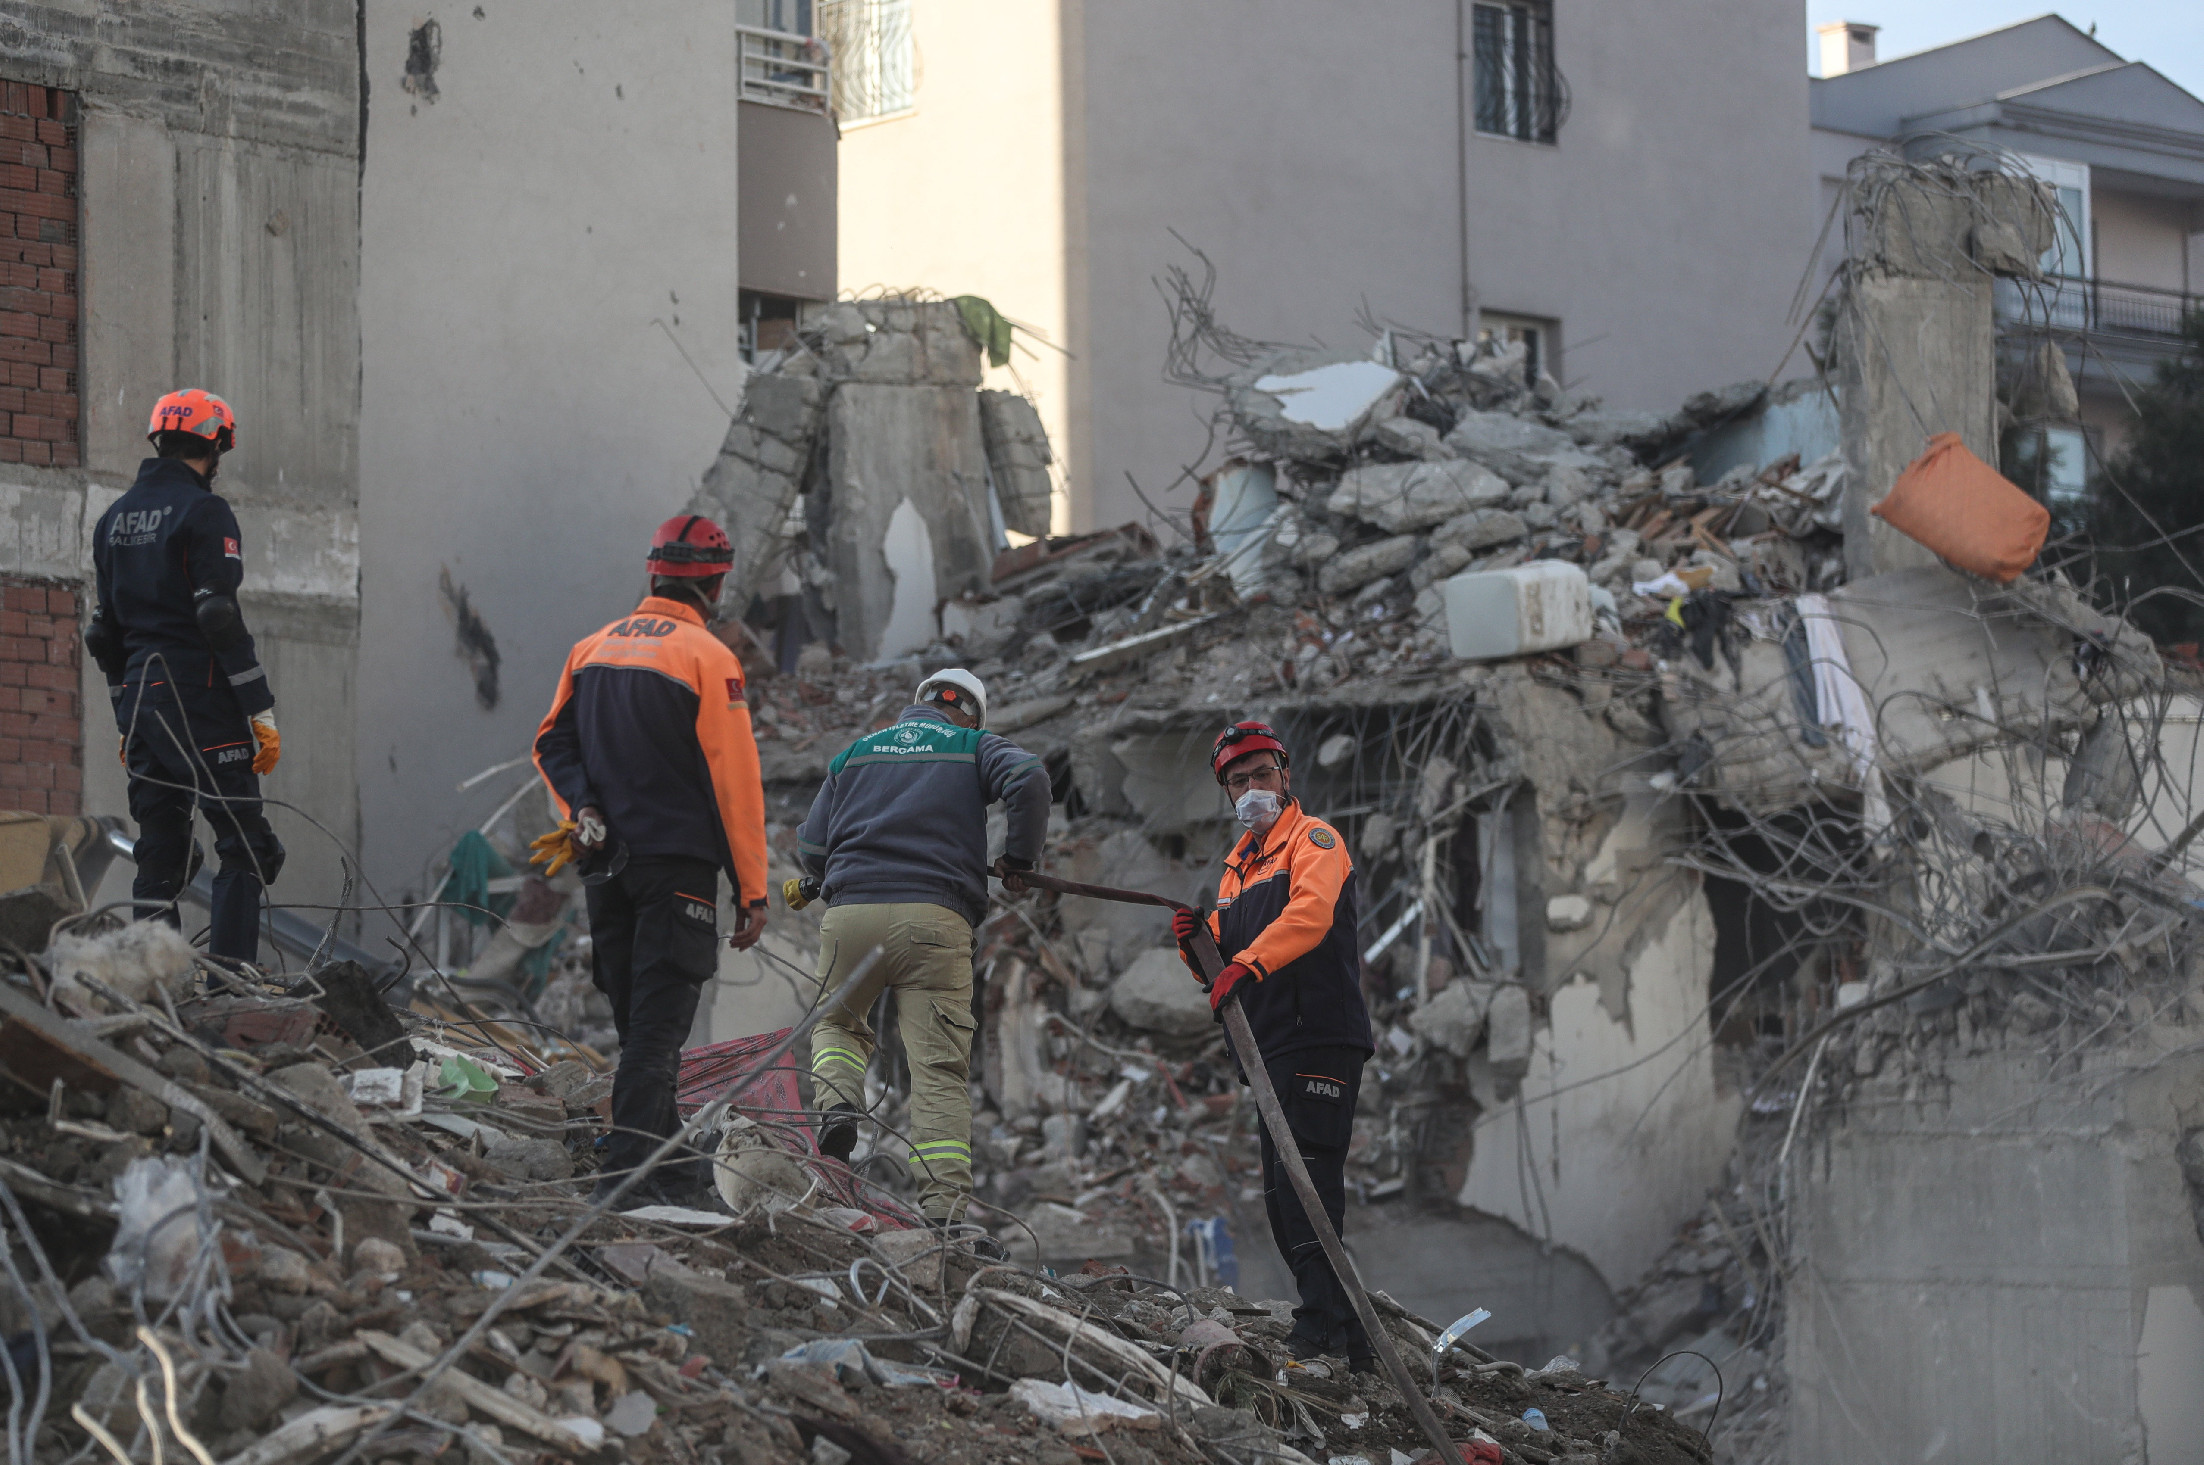 Pánikkeltő földrengés volt Salvadorban és Törökországban